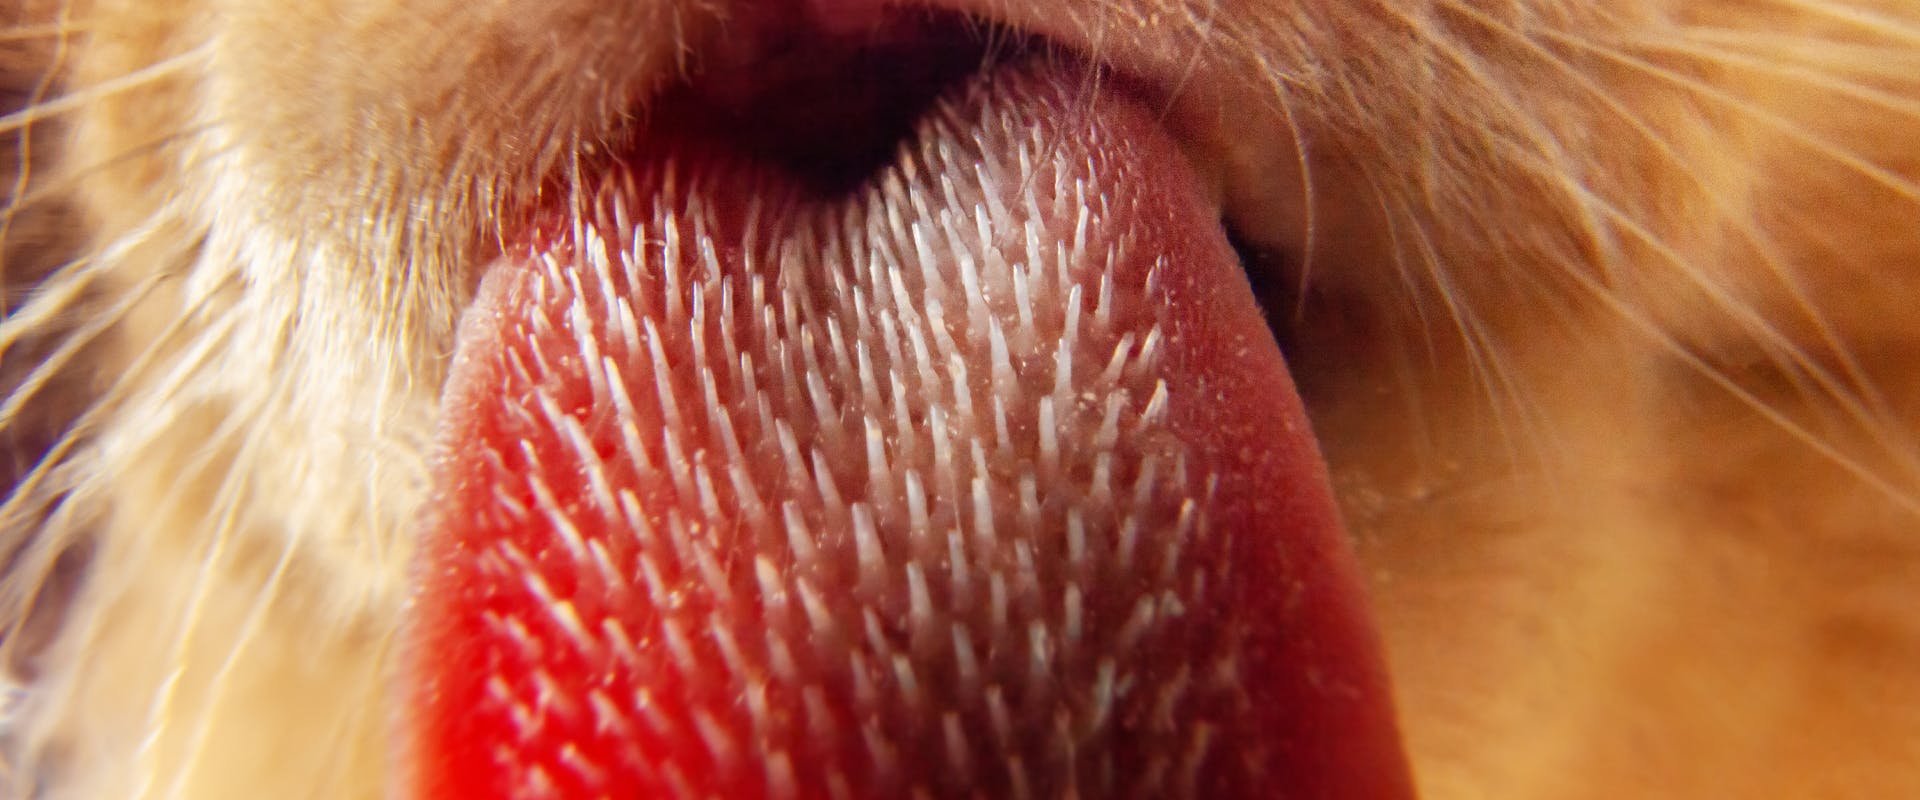 A close up of a cat's tongue.